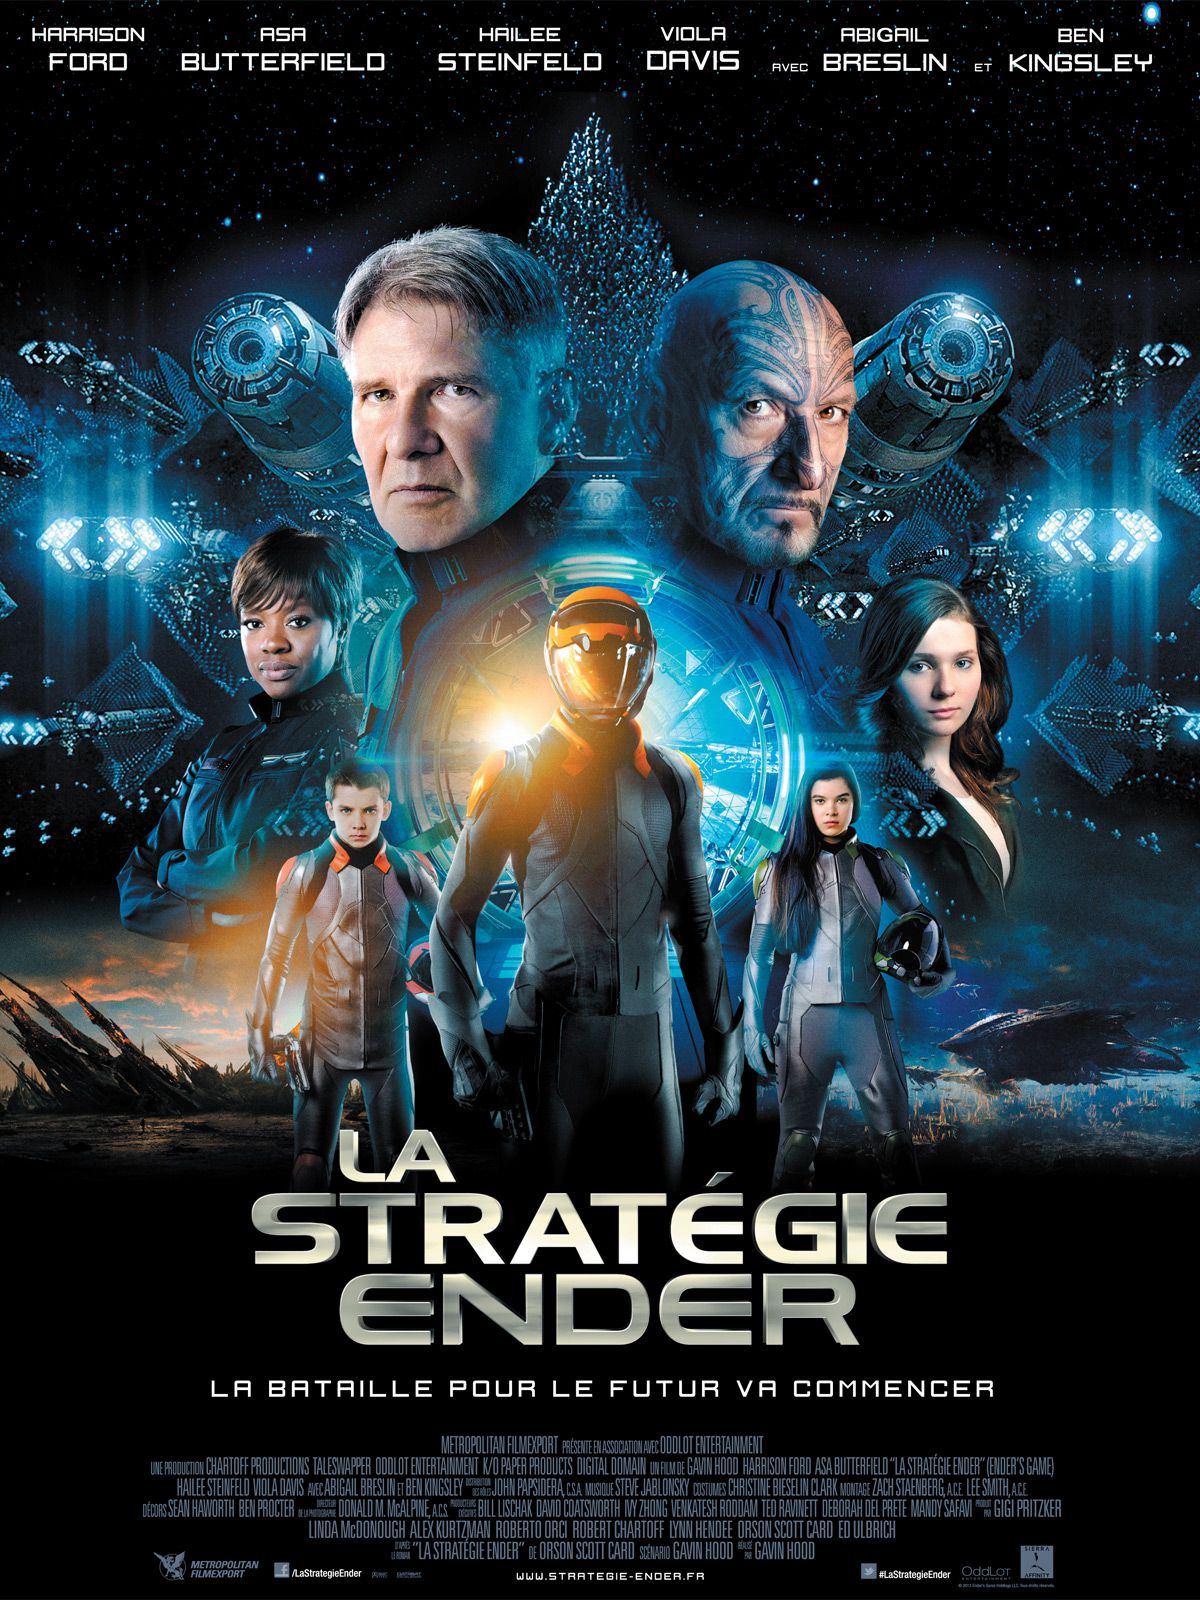 La Stratégie Ender - Film (2013) streaming VF gratuit complet